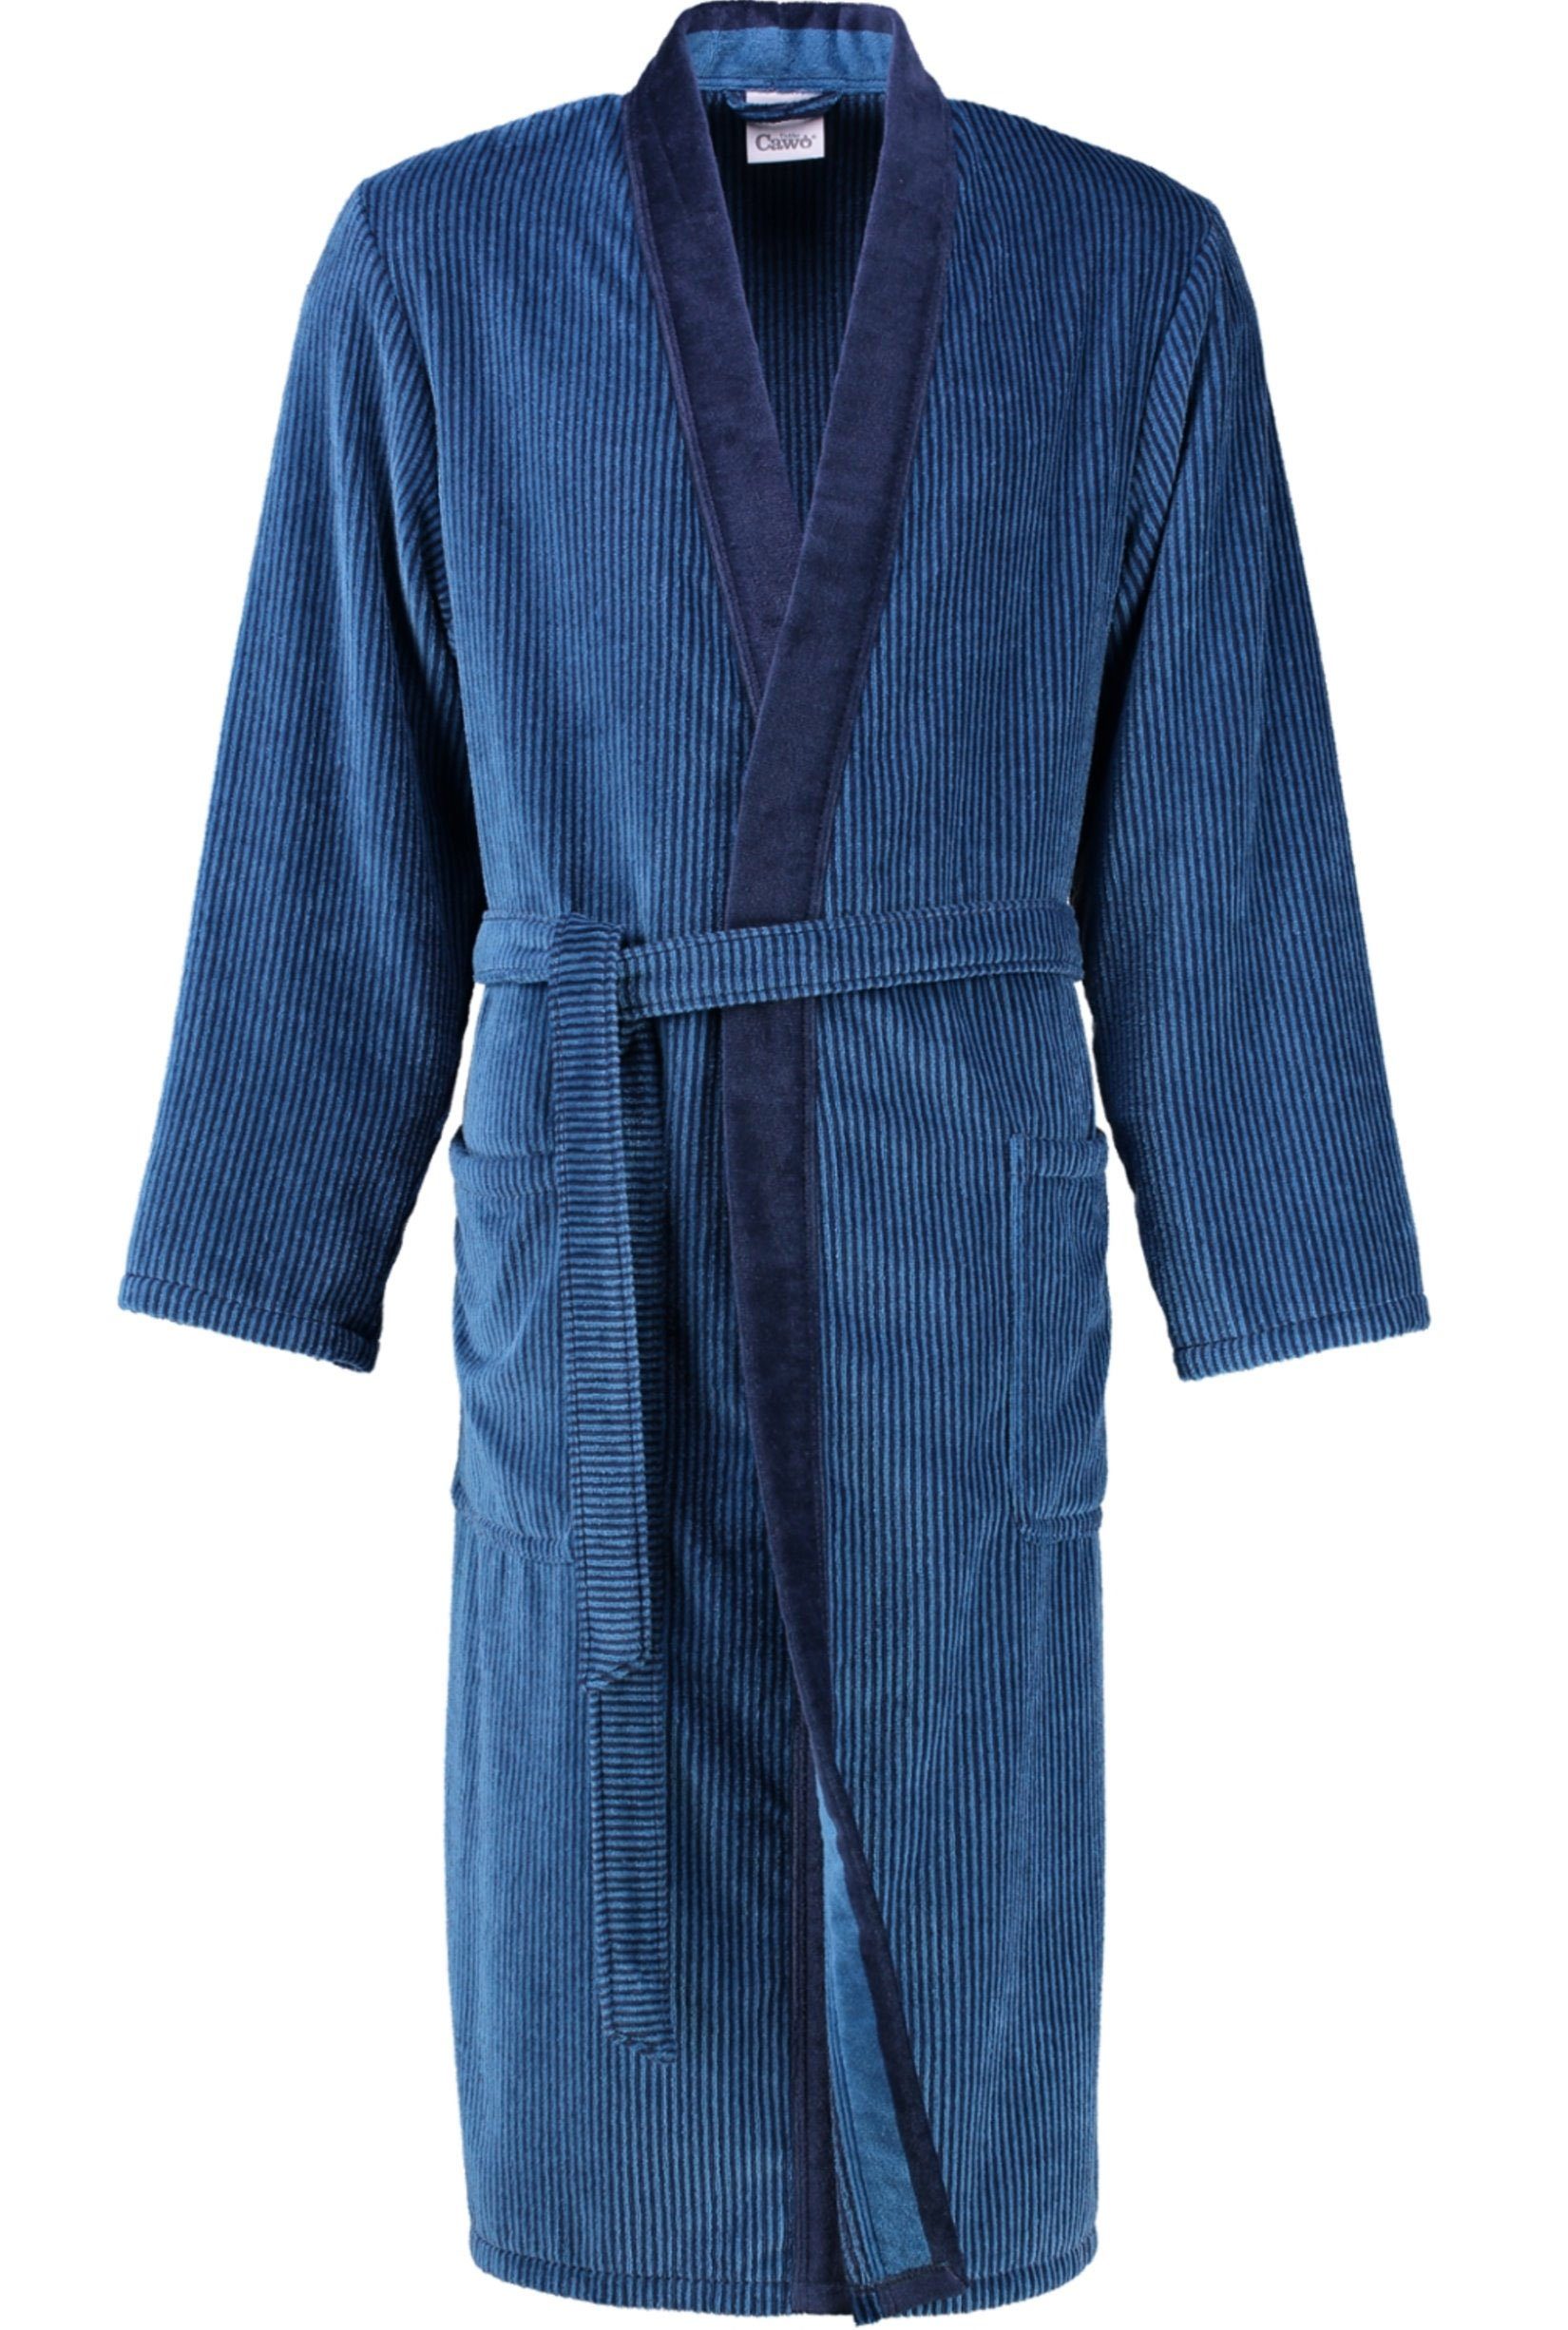 Kimono blau Gürtel, Form Herrenbademantel 5840, Kimono-Kragen, Walkvelours, Cawö Langform,